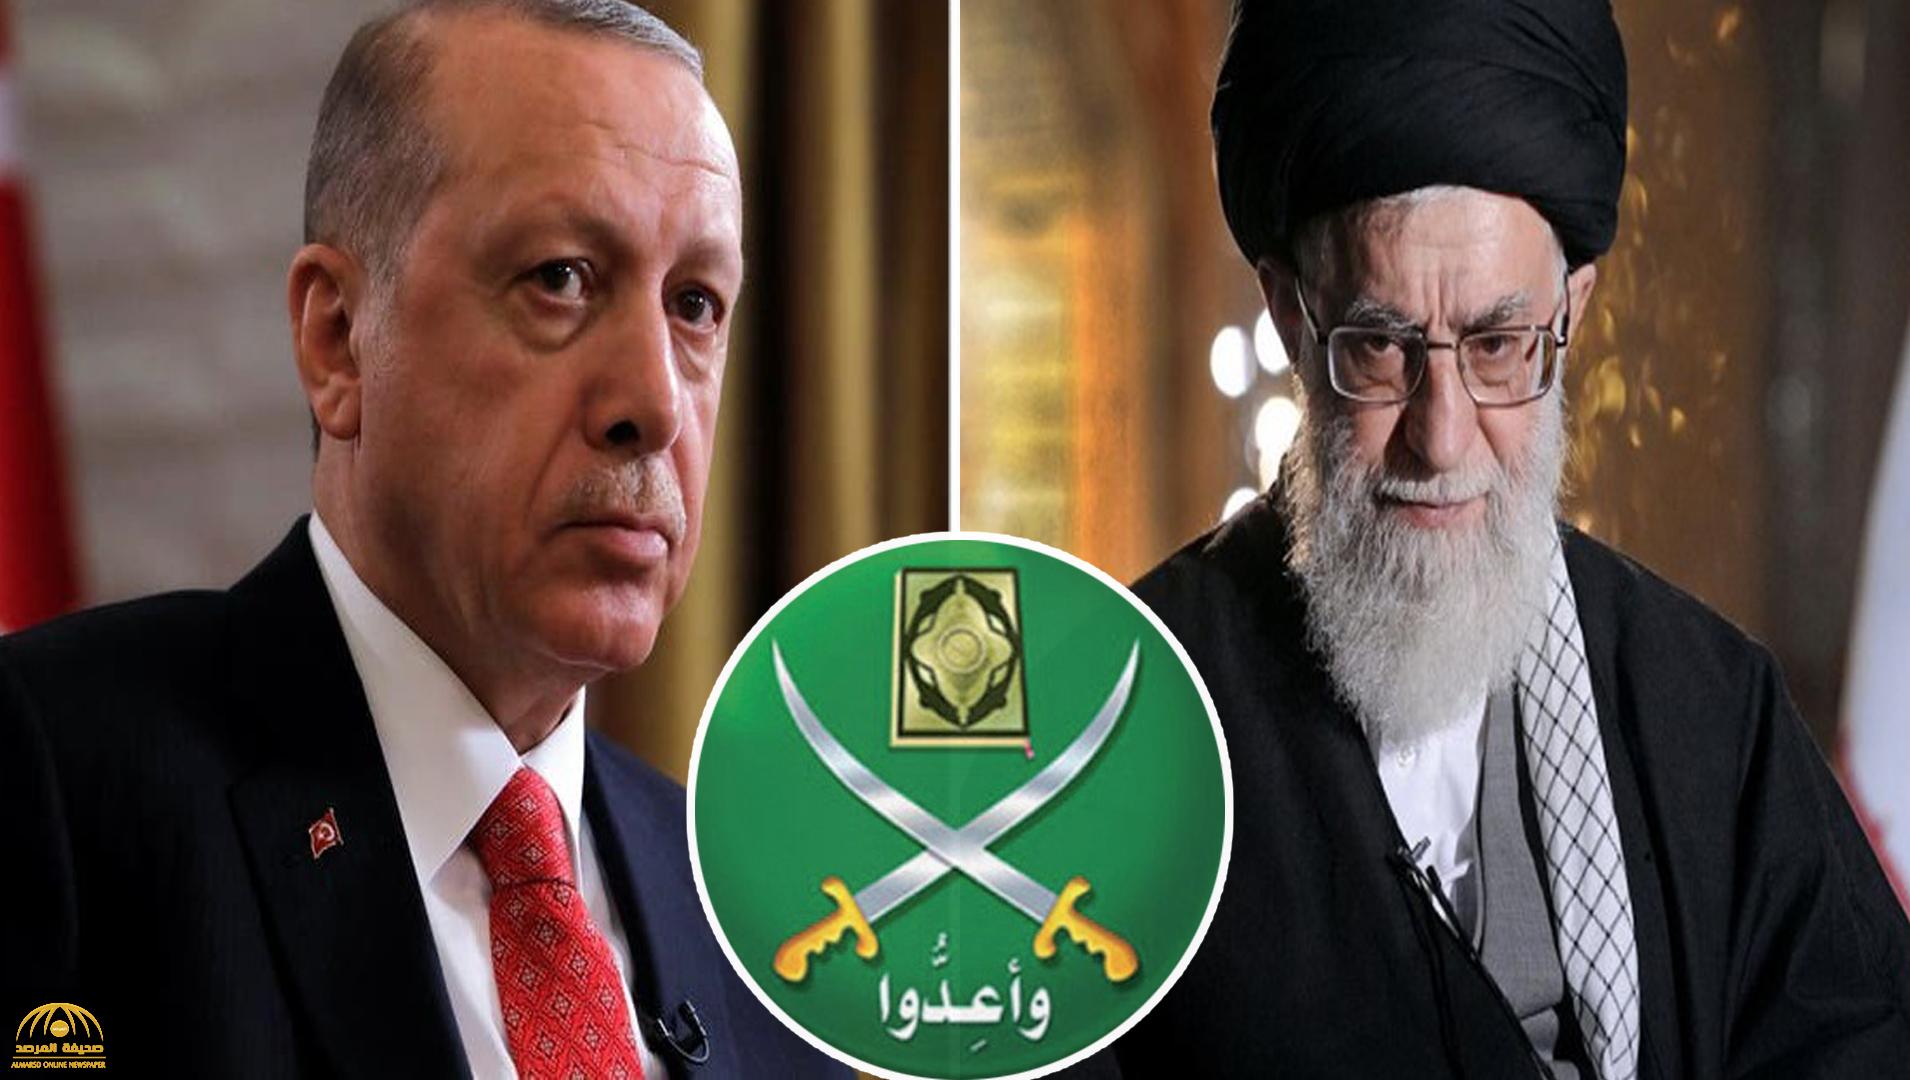 المرصد تنشر تسريبات "استخباراتية" بشأن مؤامرة ضد السعودية  في تركيا بين الحرس الثوري الإيراني والإخوان!